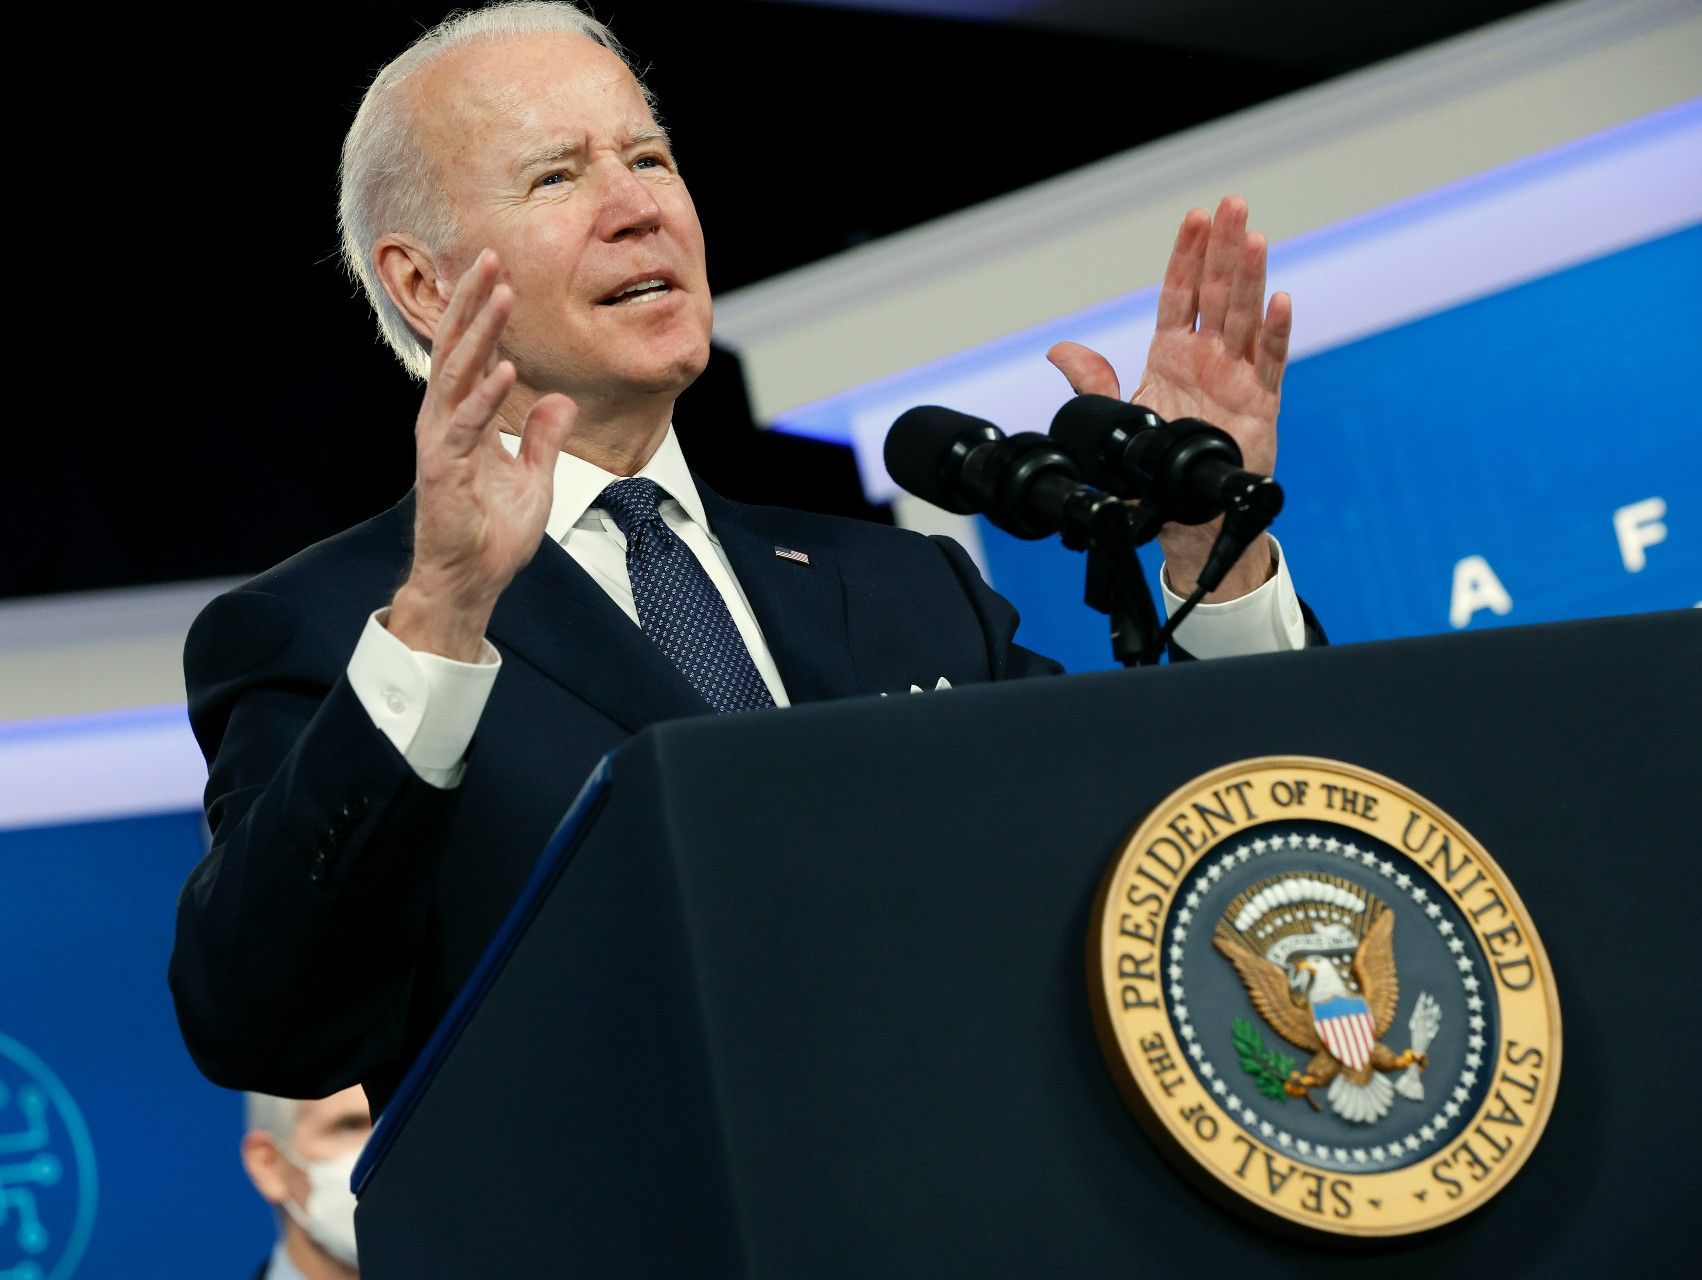 Joe Biden er en tragisk fiasko, skriver David Trads. Foto: Getty Images